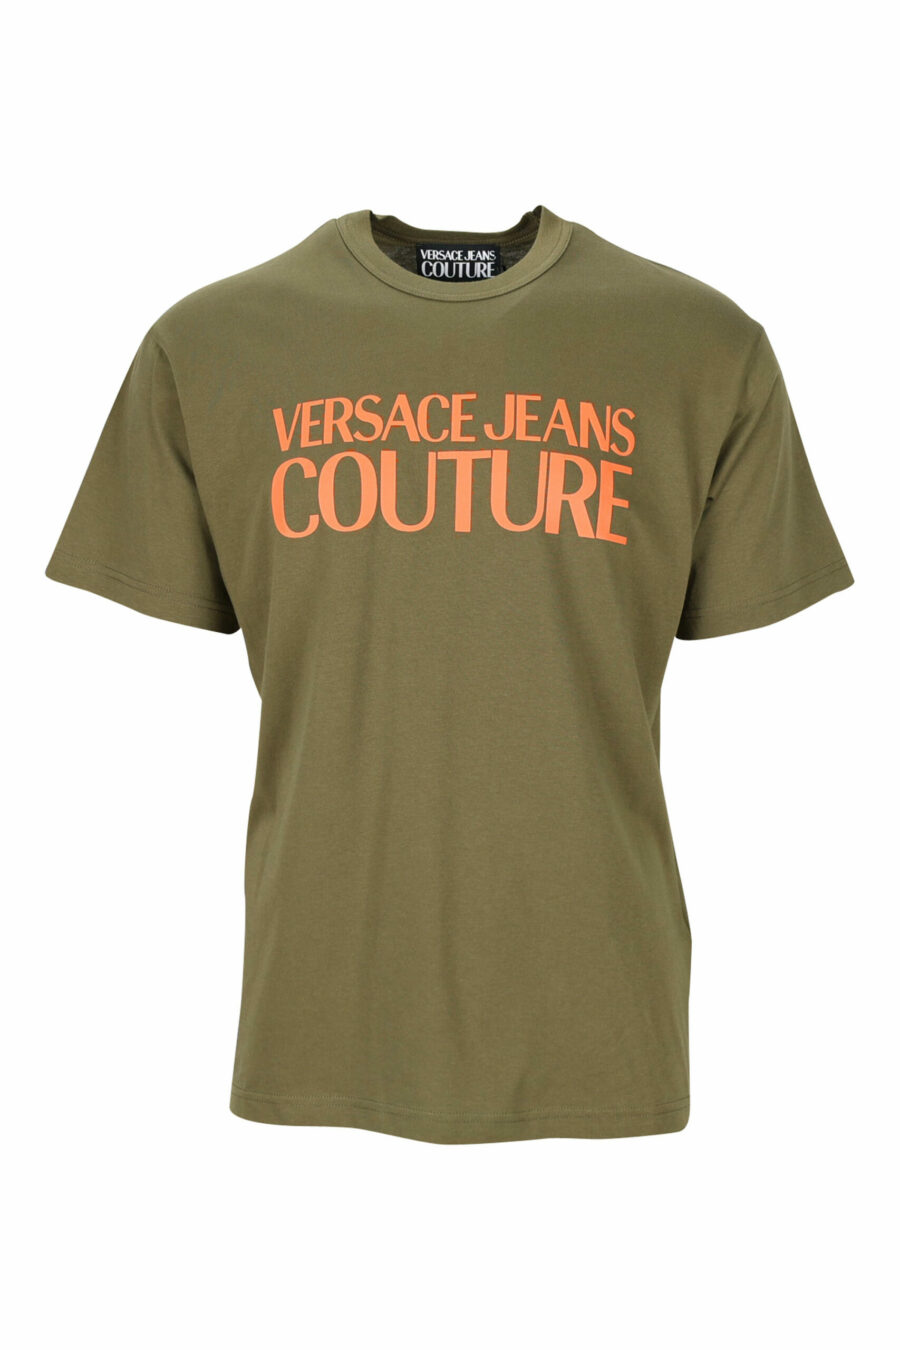 T-shirt vert militaire avec maxilogue orange classique - 8052019468090 scaled